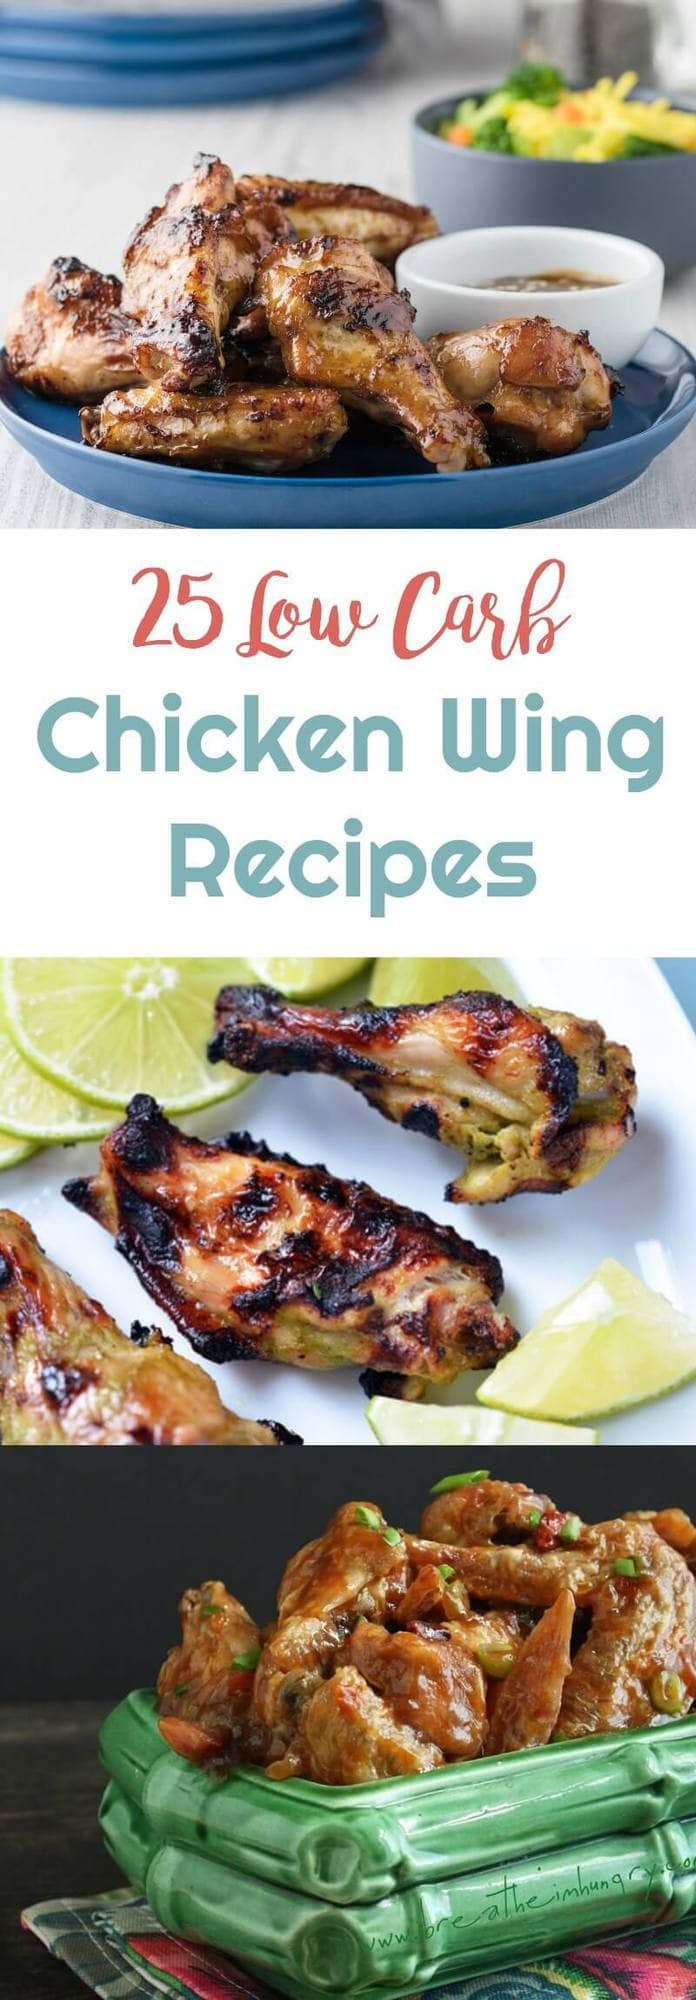 Low Carb Chicken Wings
 25 Low Carb Chicken Wing Recipes